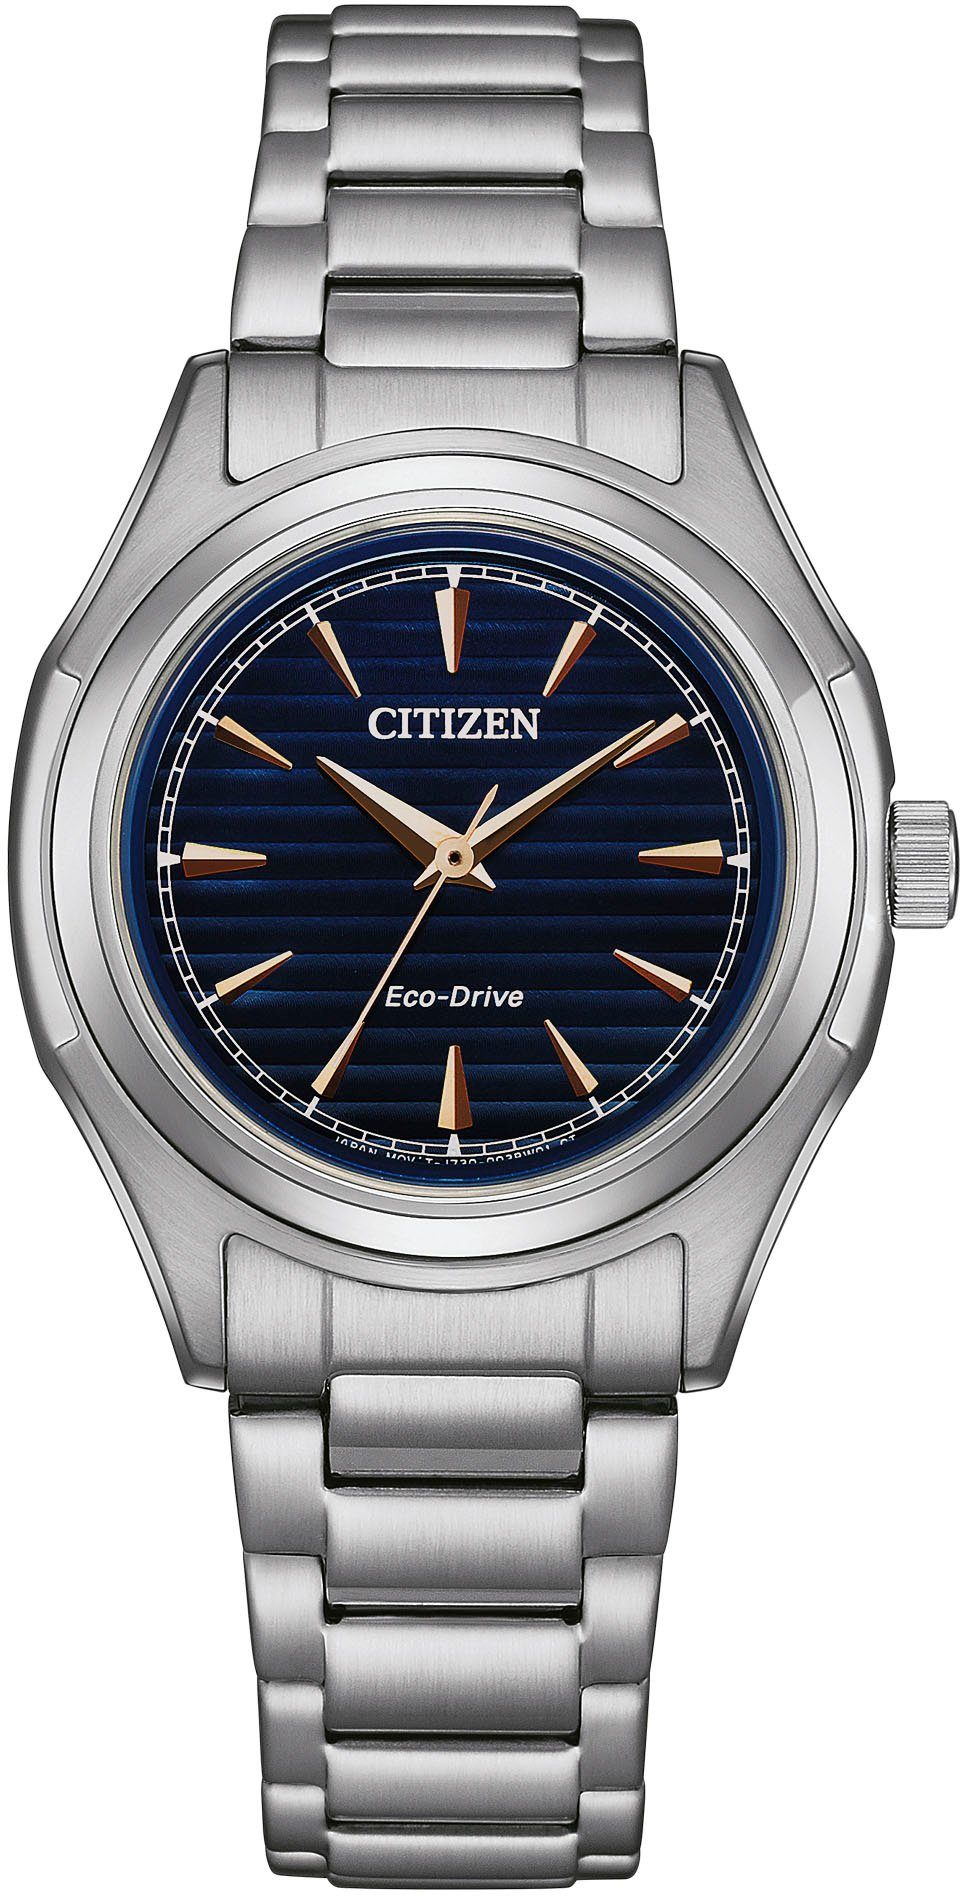 Citizen Solaruhr FE2110-81L, Armbanduhr, Damenuhr